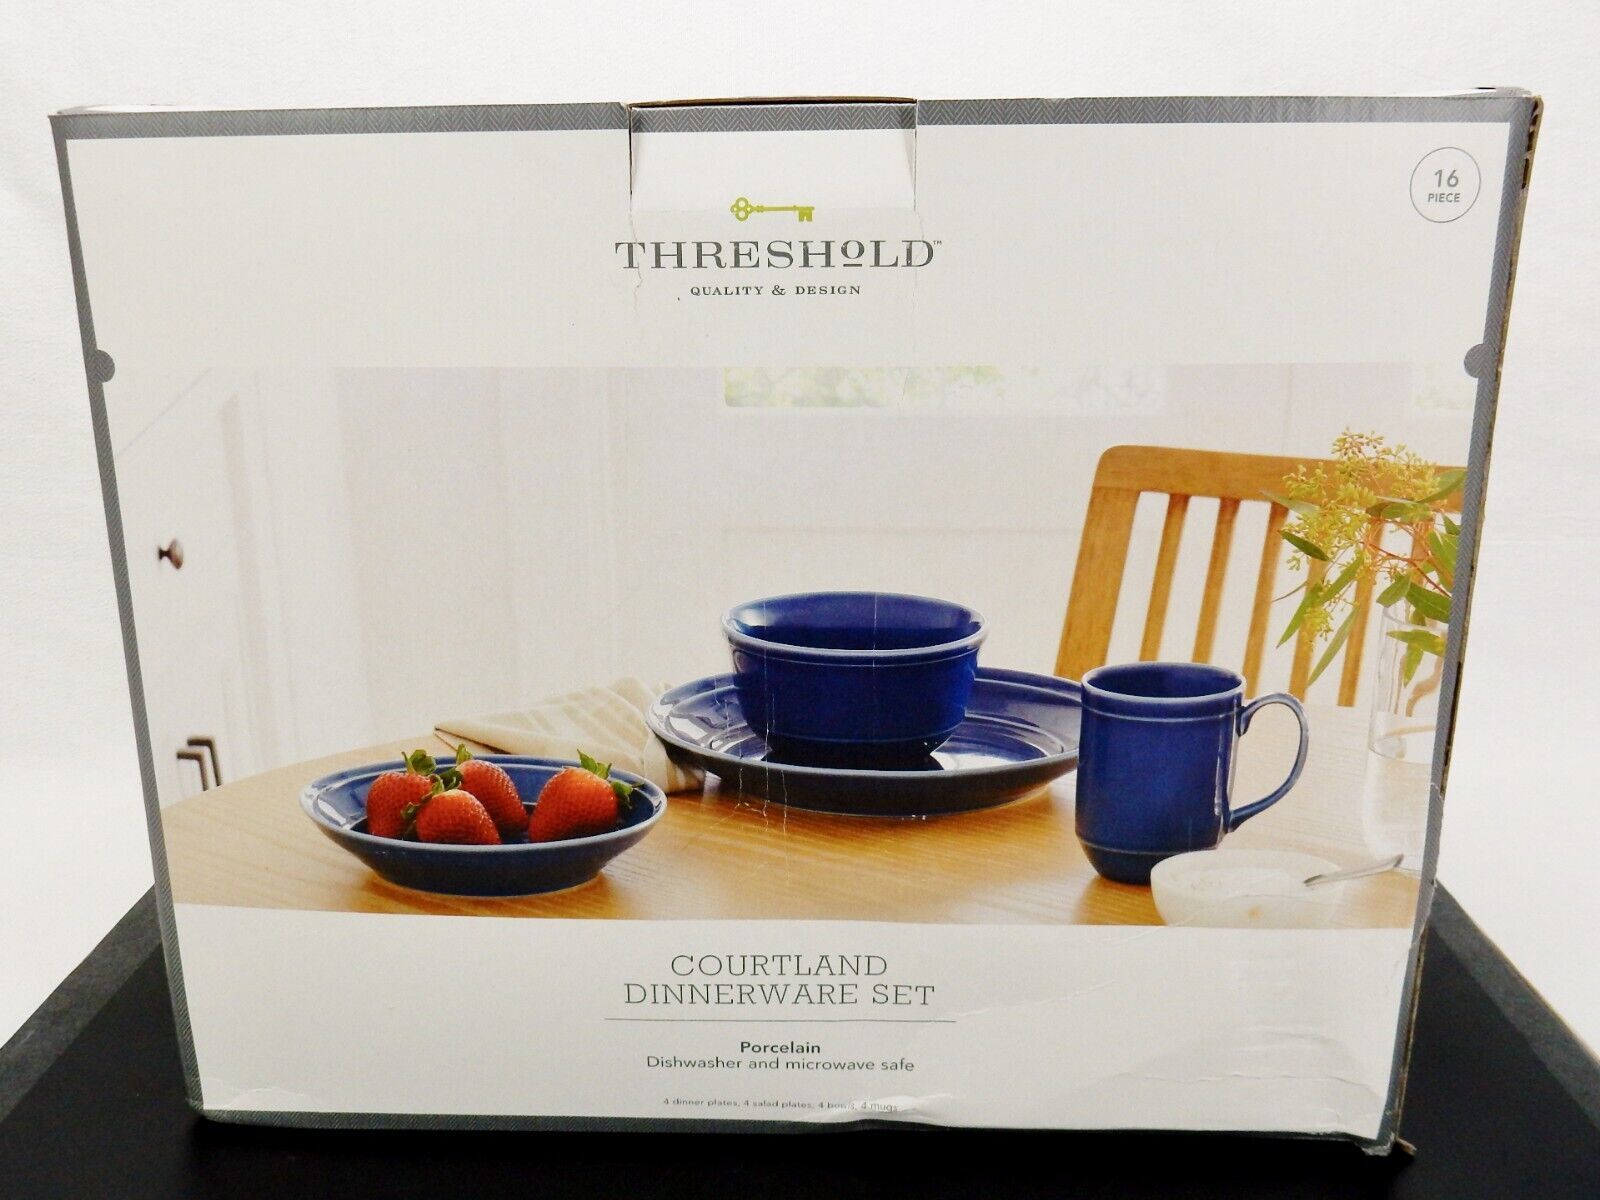 16 Piece Porcelain Dinnerware Set, Courtland by Threshold Designs Dark Blue - $58.75